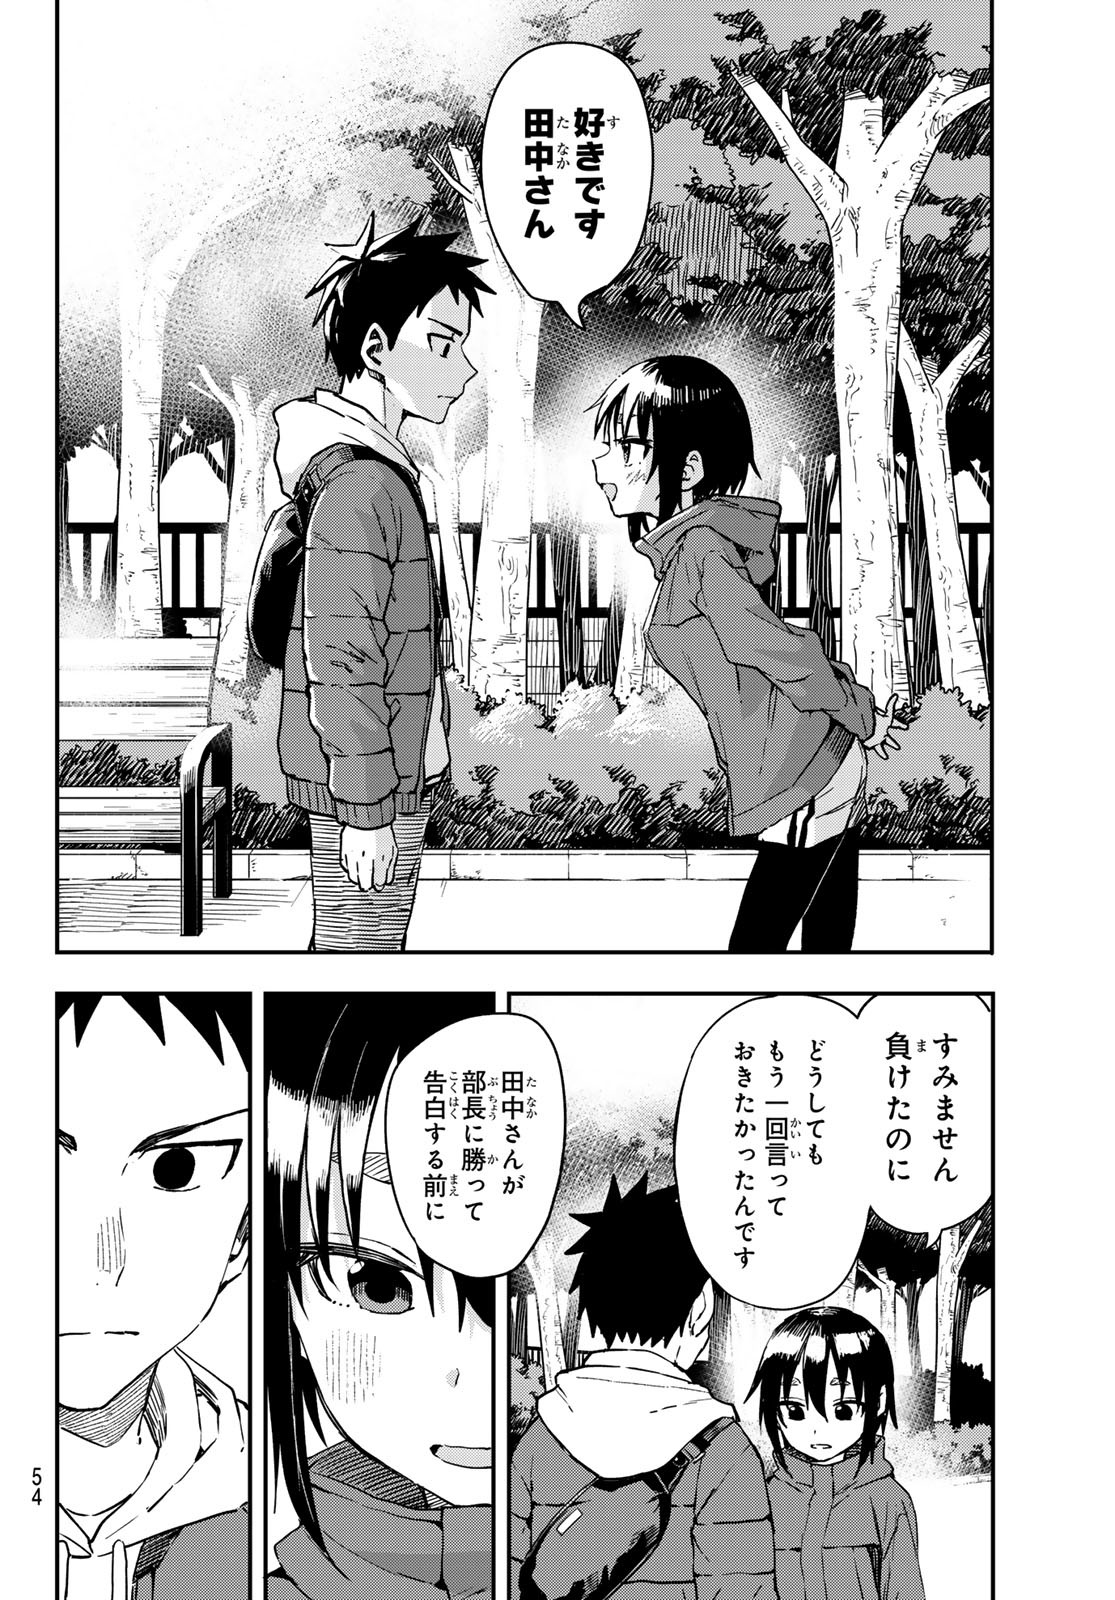 Soredemo Ayumu wa Yosetekuru Vol.13 Ch.211 Page 5 - Mangago